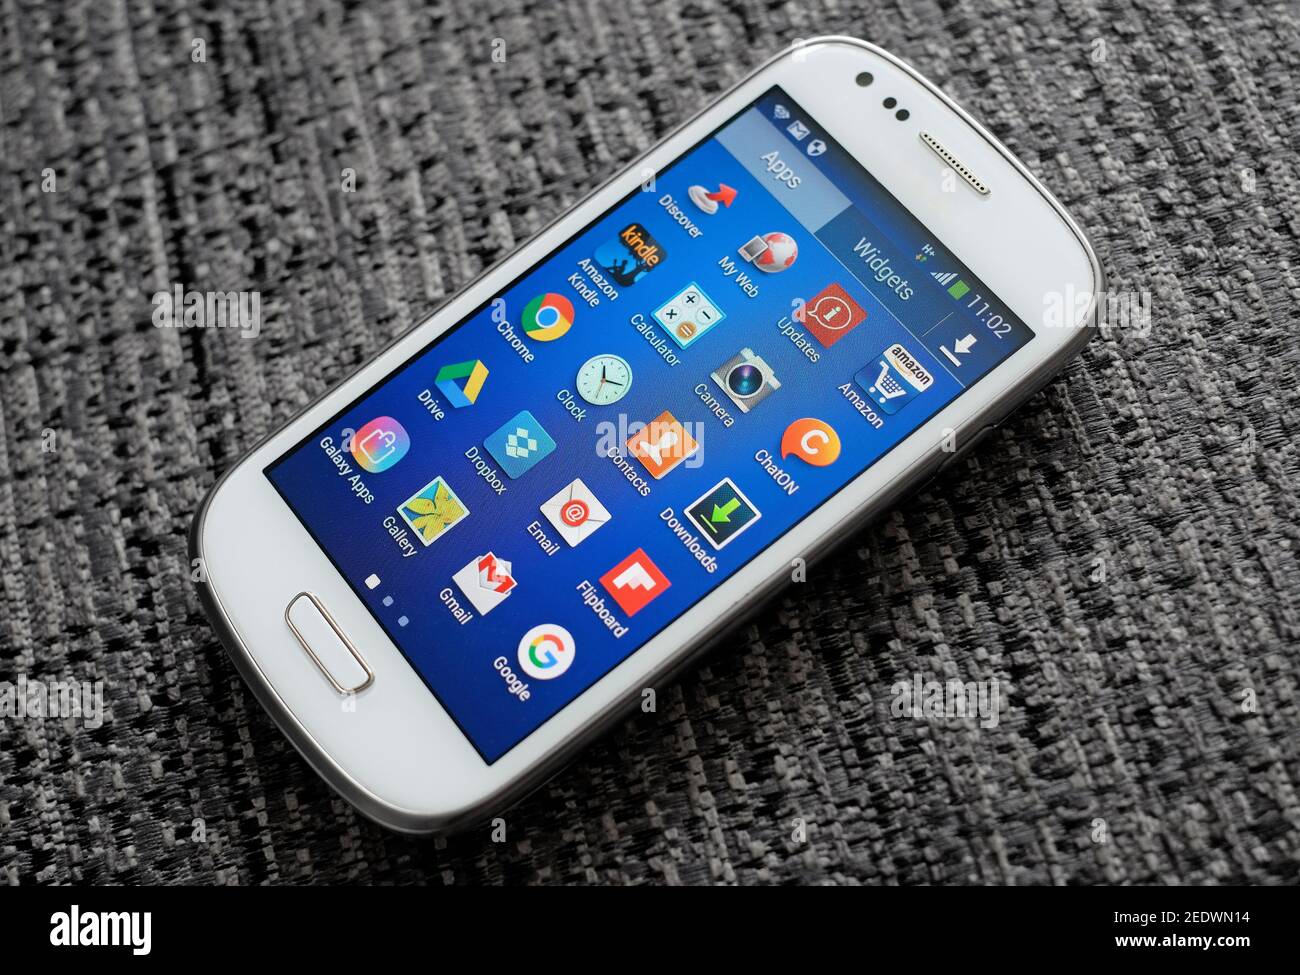 icone delle app sullo schermo del telefono cellulare android Foto Stock